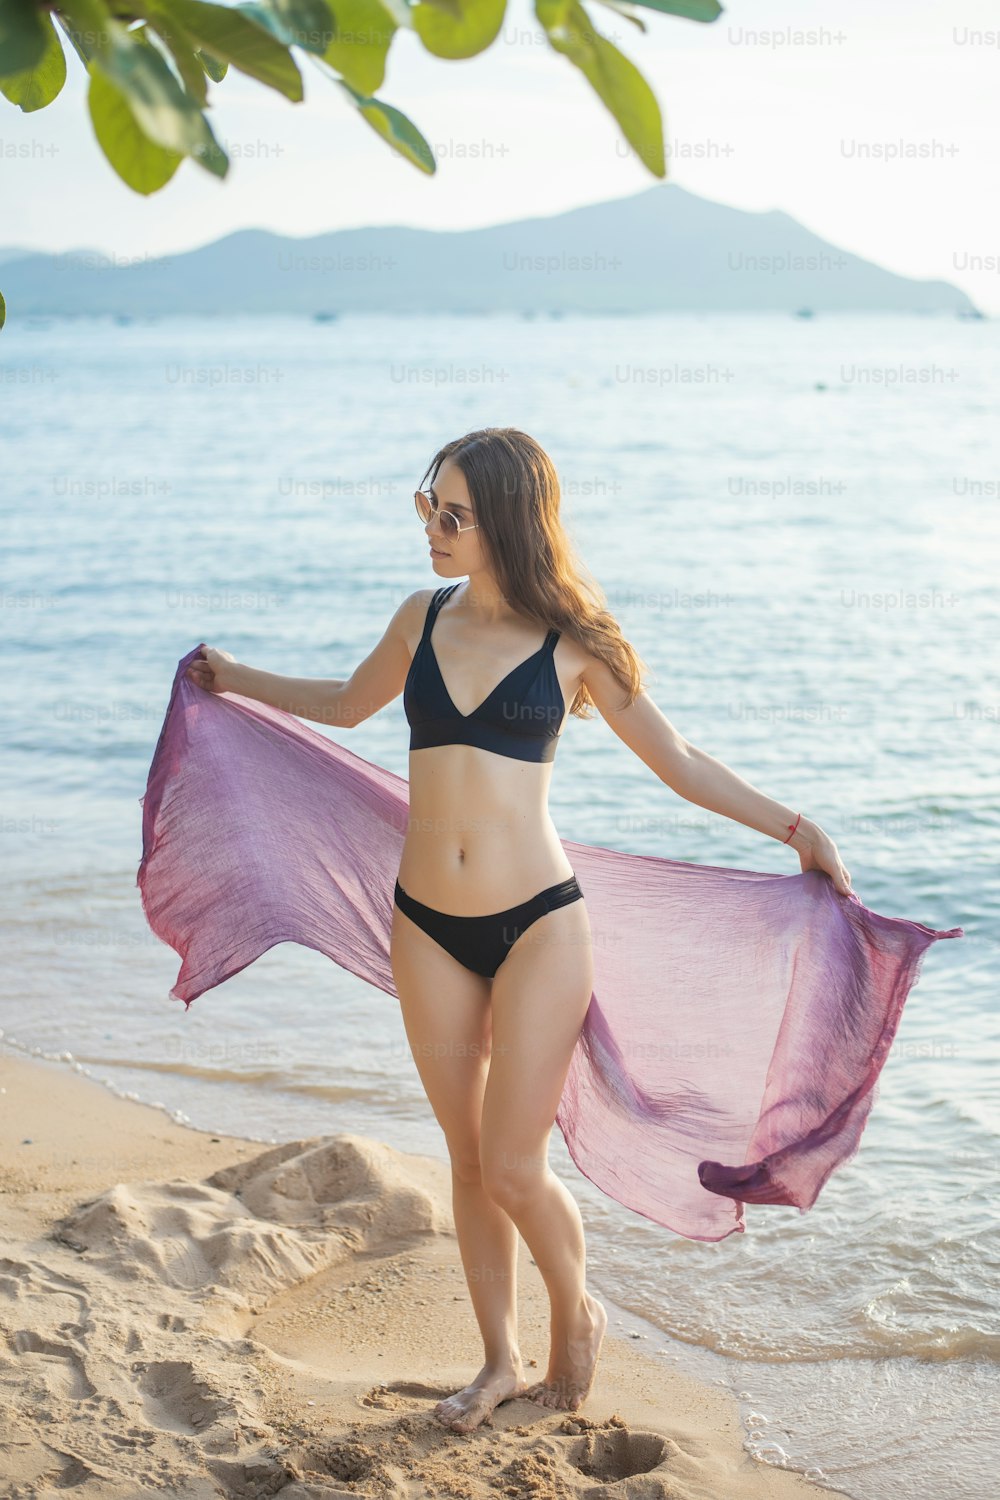 Schöne Frau im schwarzen Bikini entspannt am Strand, Sommerkonzept